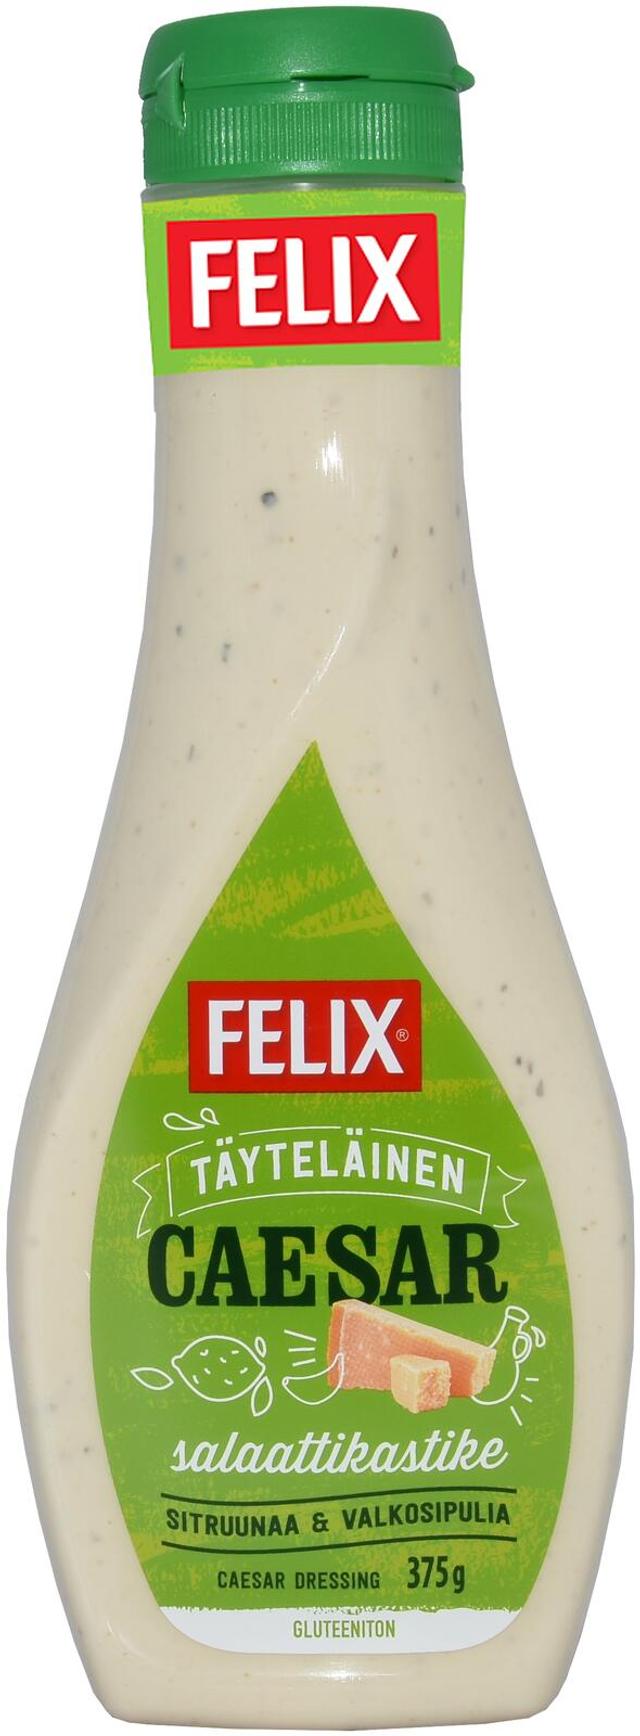 Felix caesar salaattikastike 375g